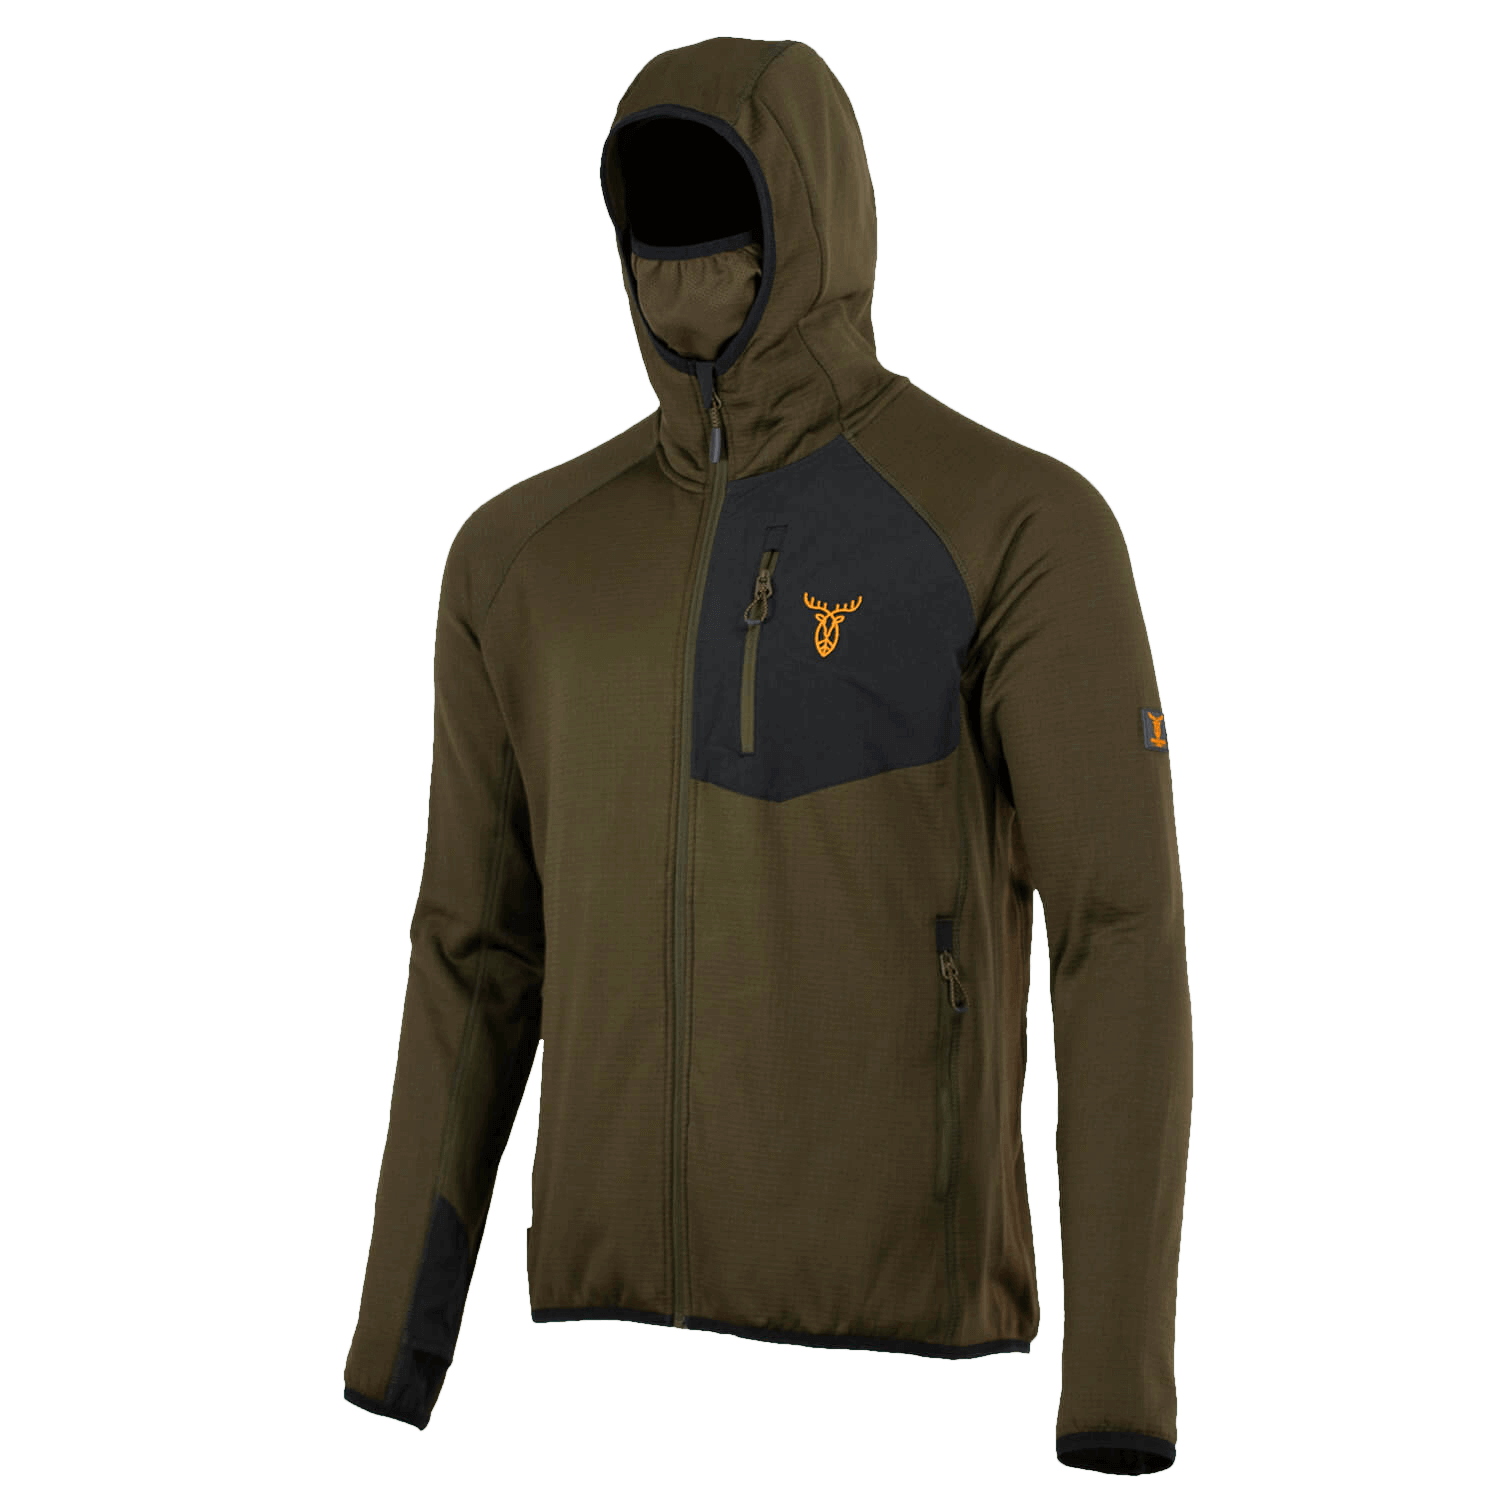 Pirscher Gear Tech-Fleece Hoodie - Hunting Jackets